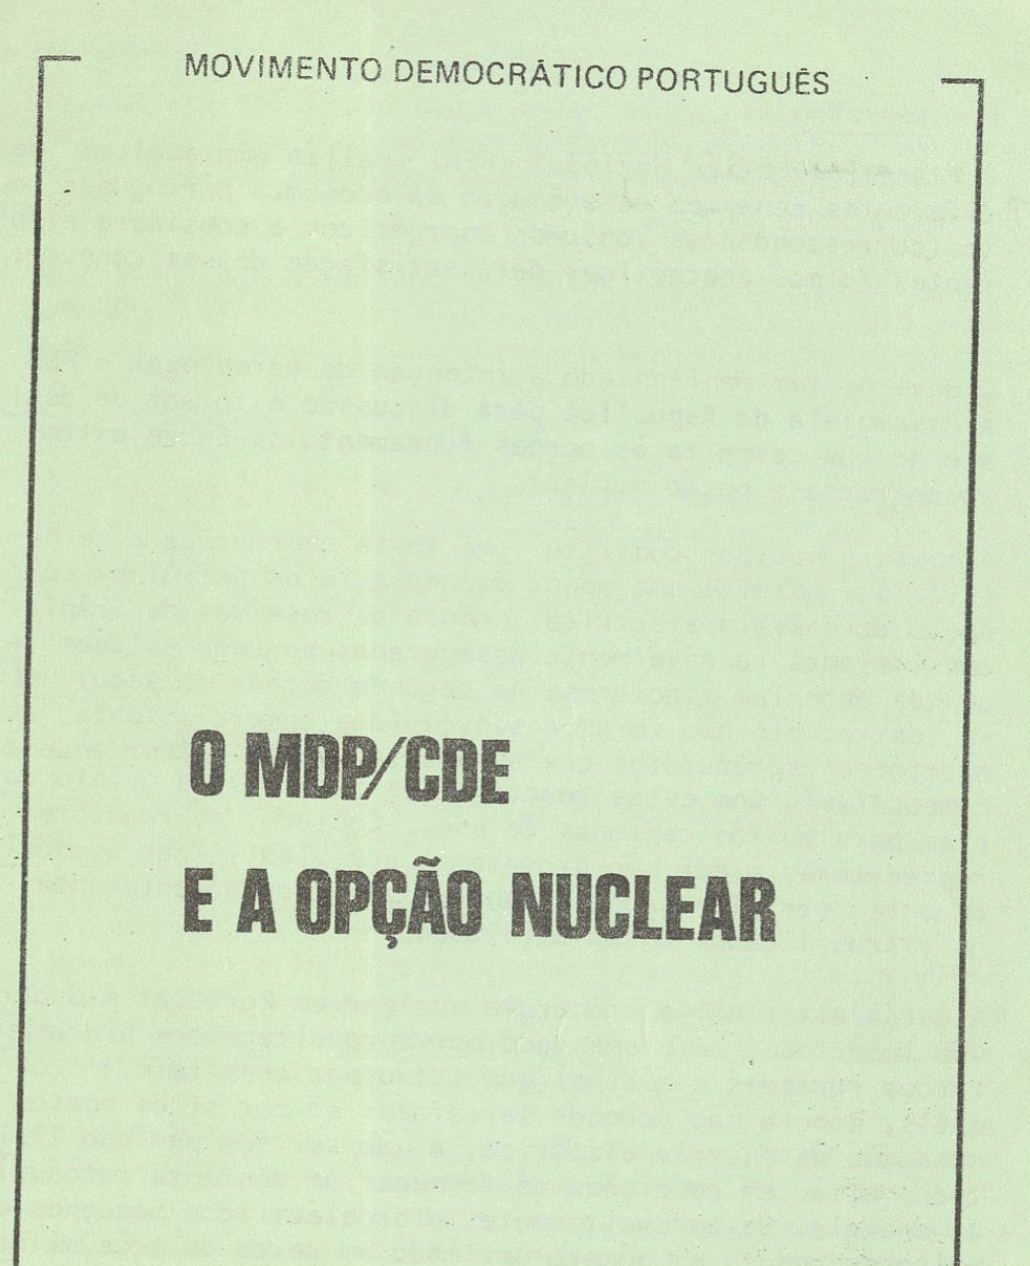 O MDP/CDE e a opção nuclear